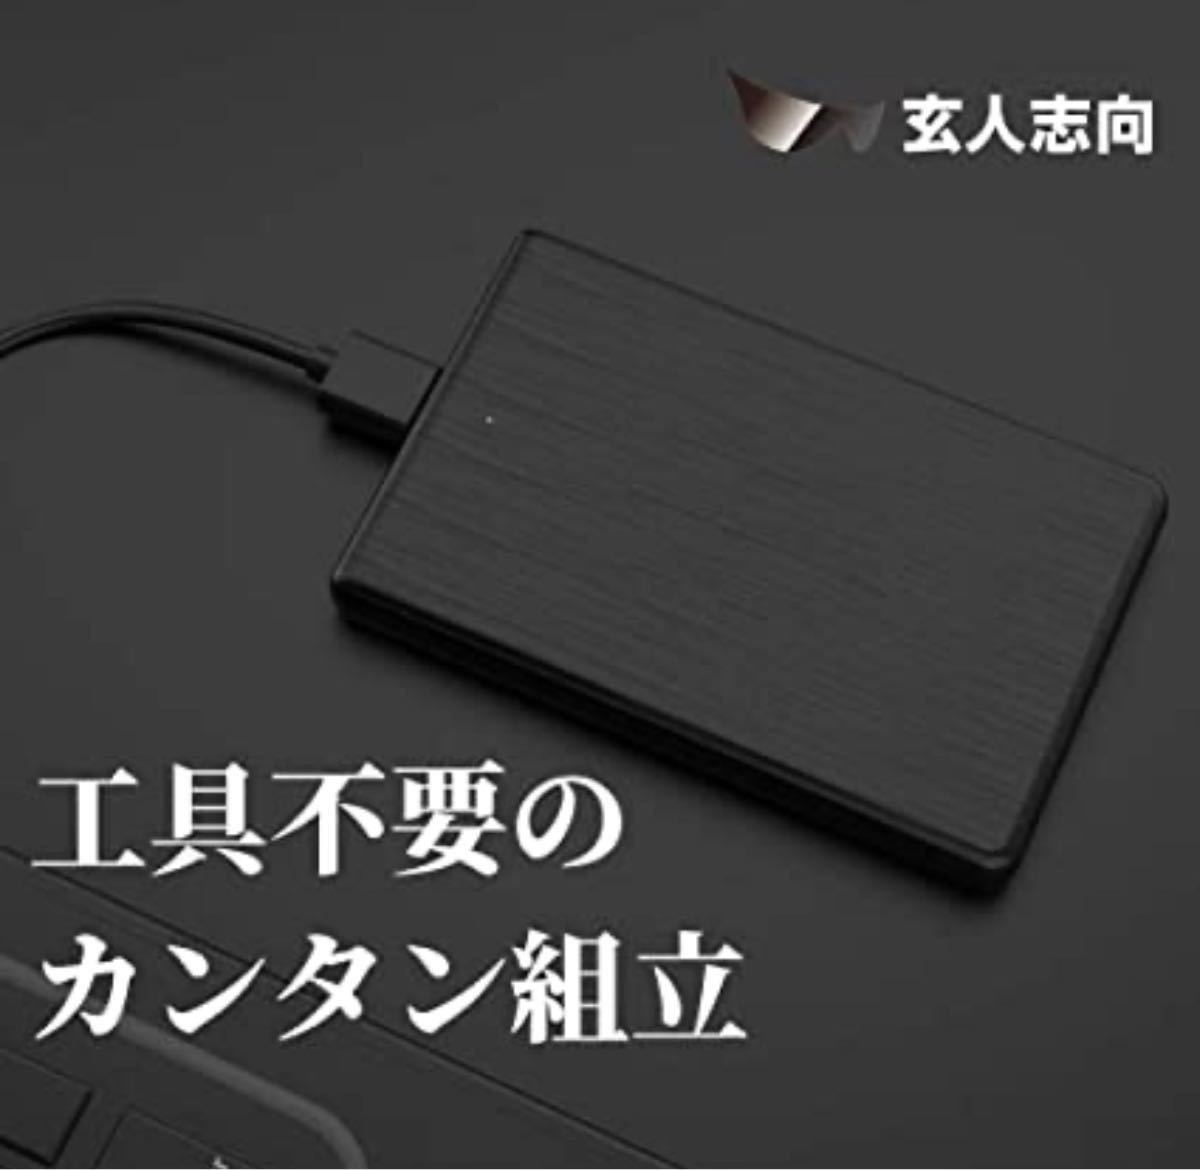 玄人志向 2.5型 HDD ケース USB3.0 ポータブルハードディスク 外付けHDD